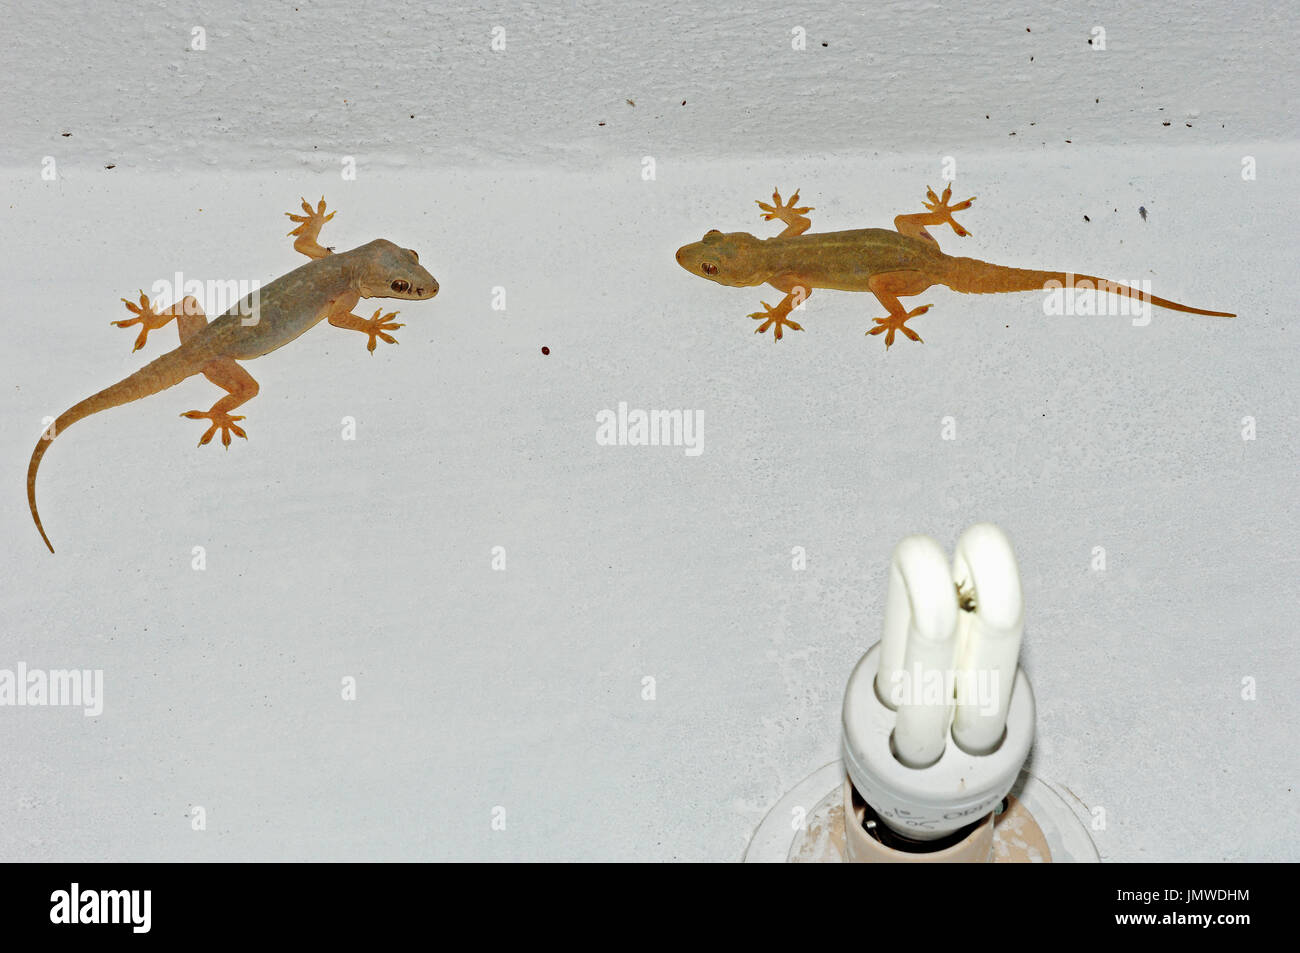 Maison commune de geckos sur mur de la maison, du Rajasthan, Inde / (Hemidactylus frenatus) / gecko à queue épineuse Maison Hausgeckos | Asiatische und Lampe Banque D'Images